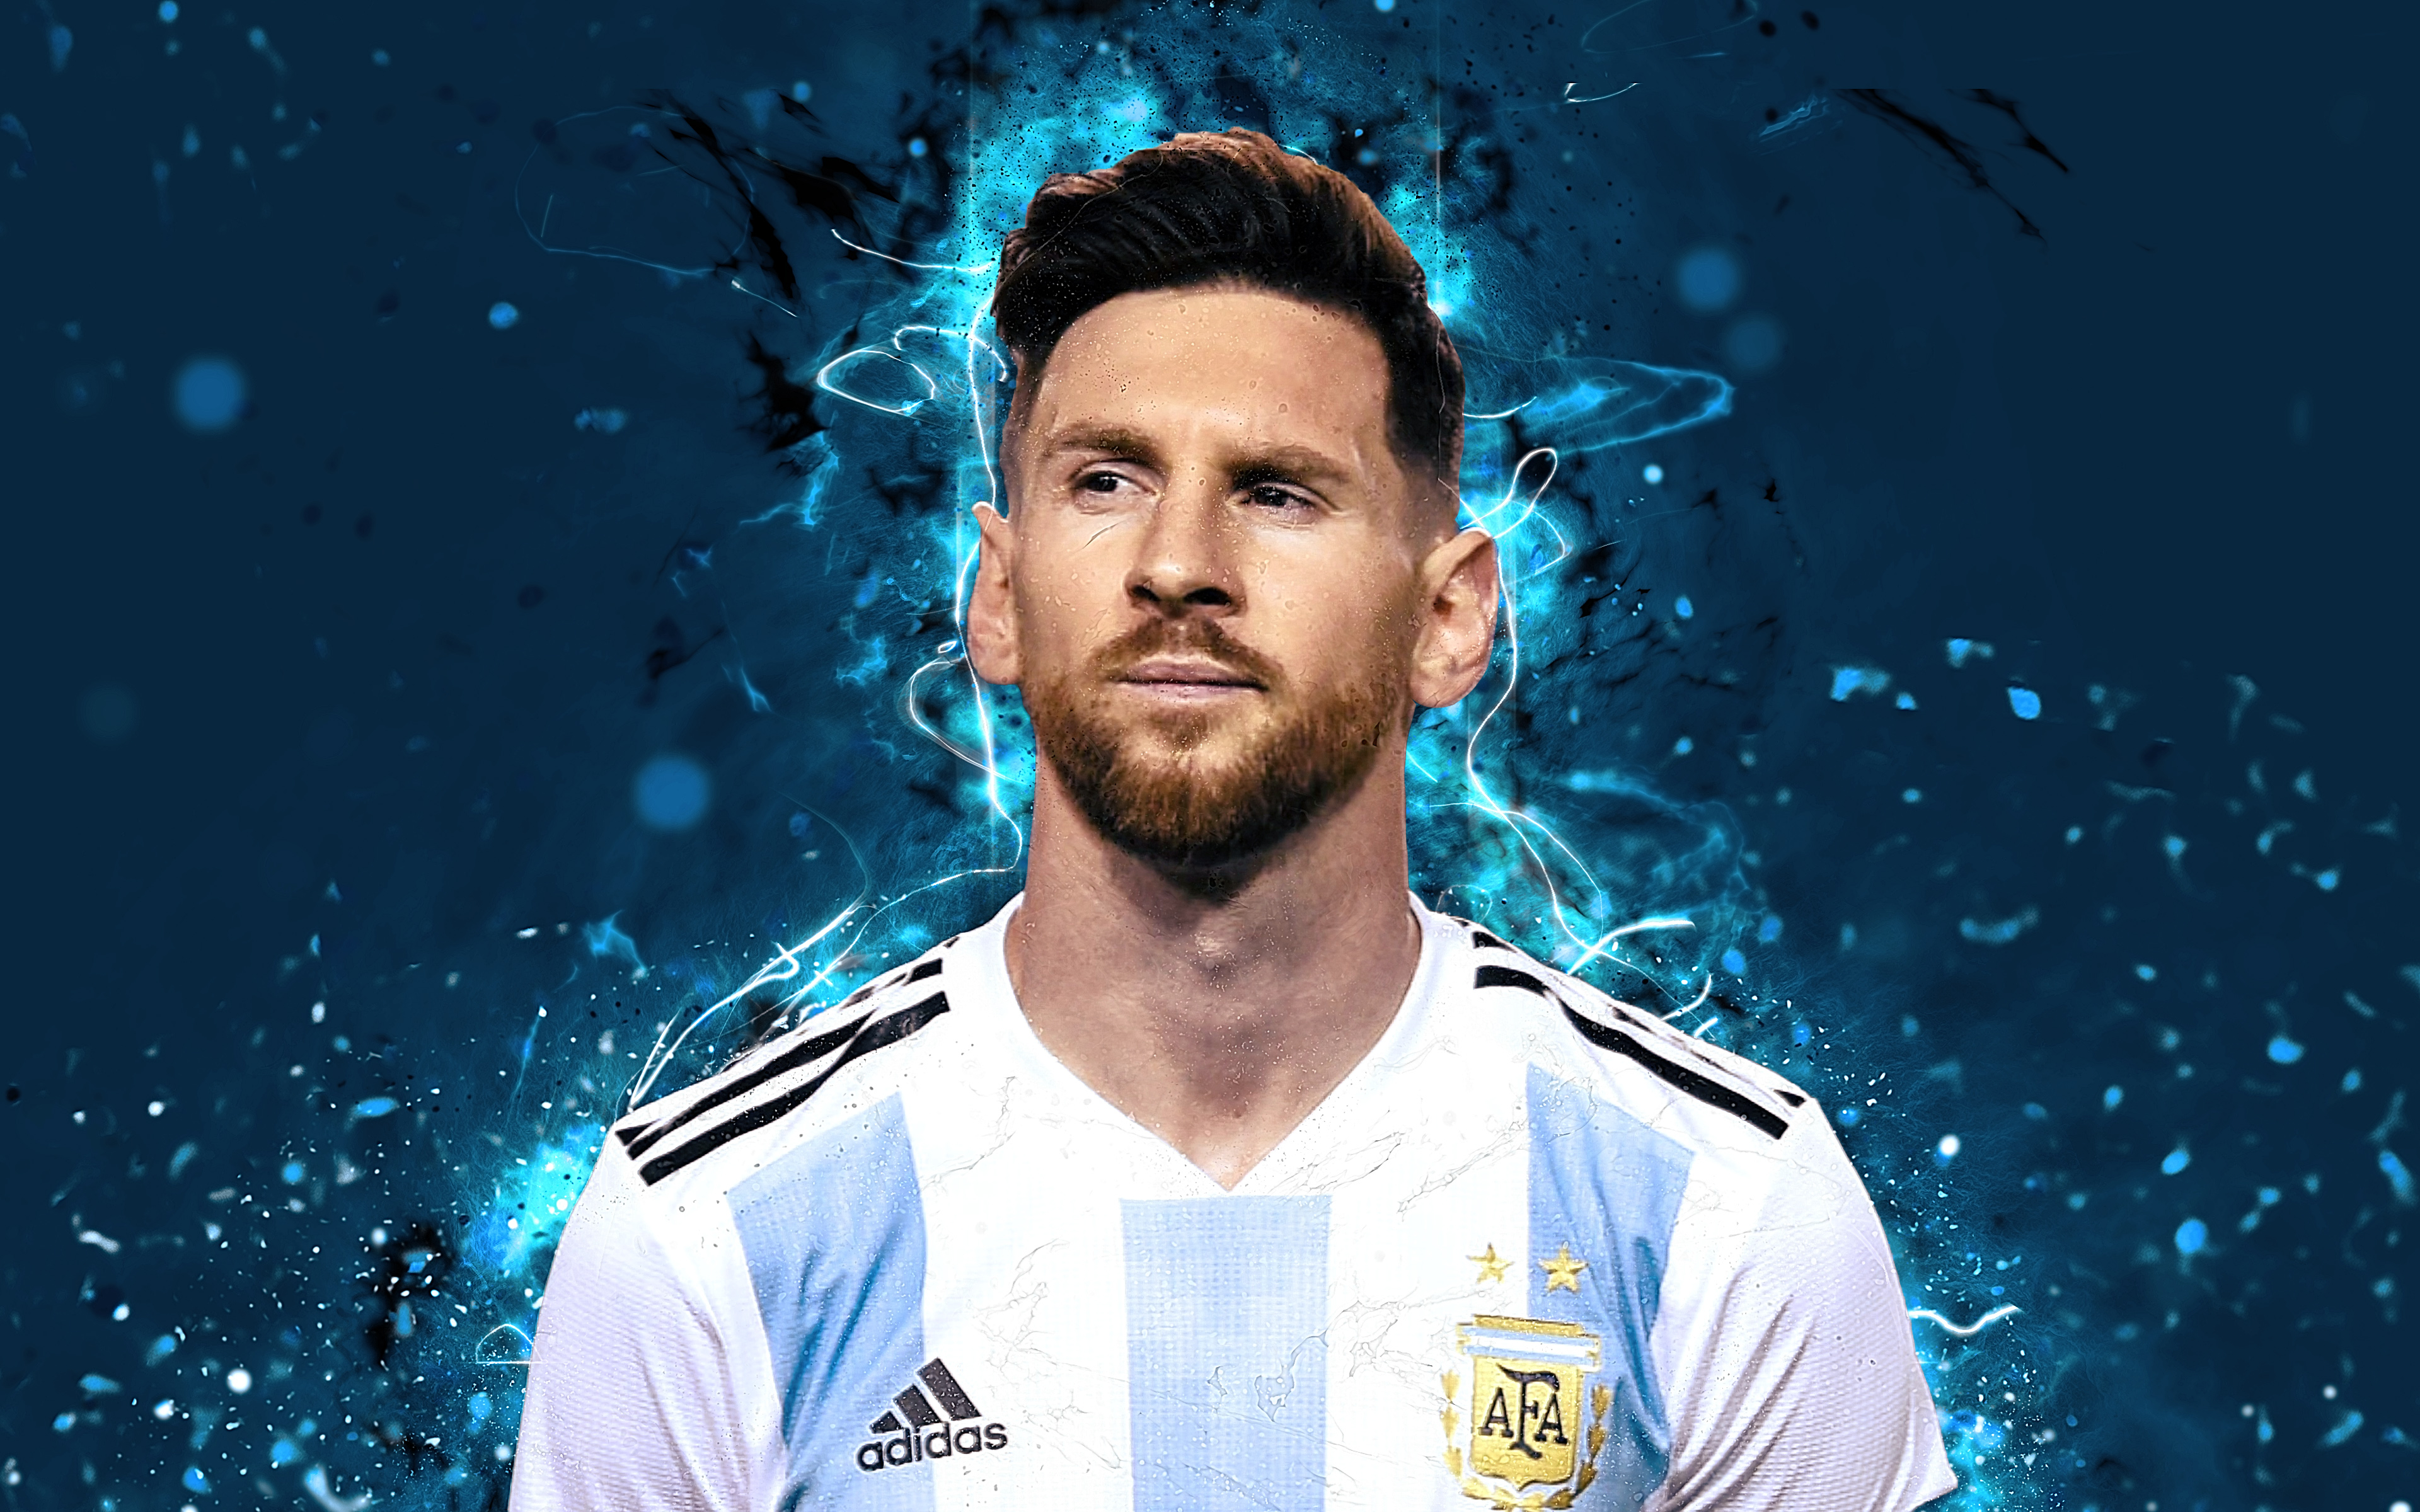 Tận hưởng bức hình nền đẹp như tranh về Lionel Messi Argentina wallpaper, nơi thiên tài bóng đá này rực rỡ trên sân cỏ với những pha bóng tuyệt đỉnh và niềm đam mê không biên giới.